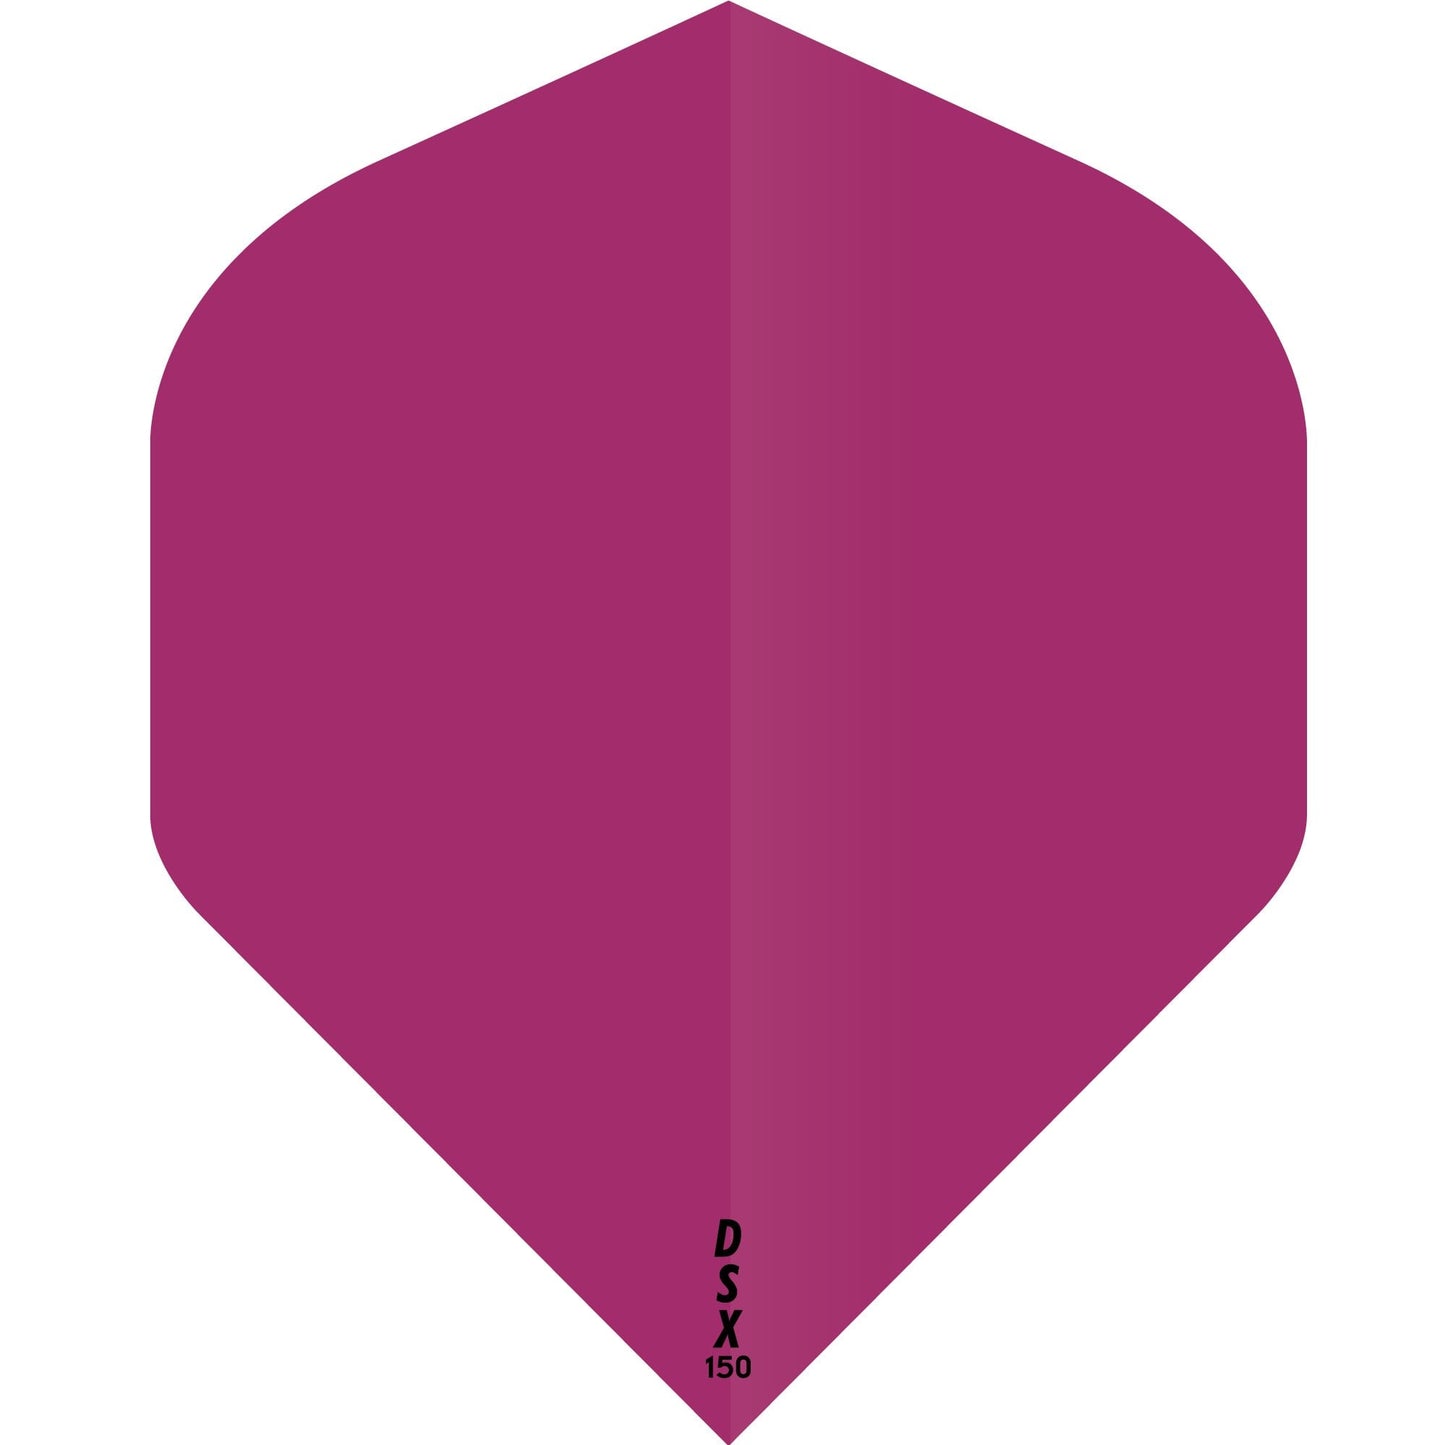 Designa DSX150 Dart Flights - No2 - Std Pink